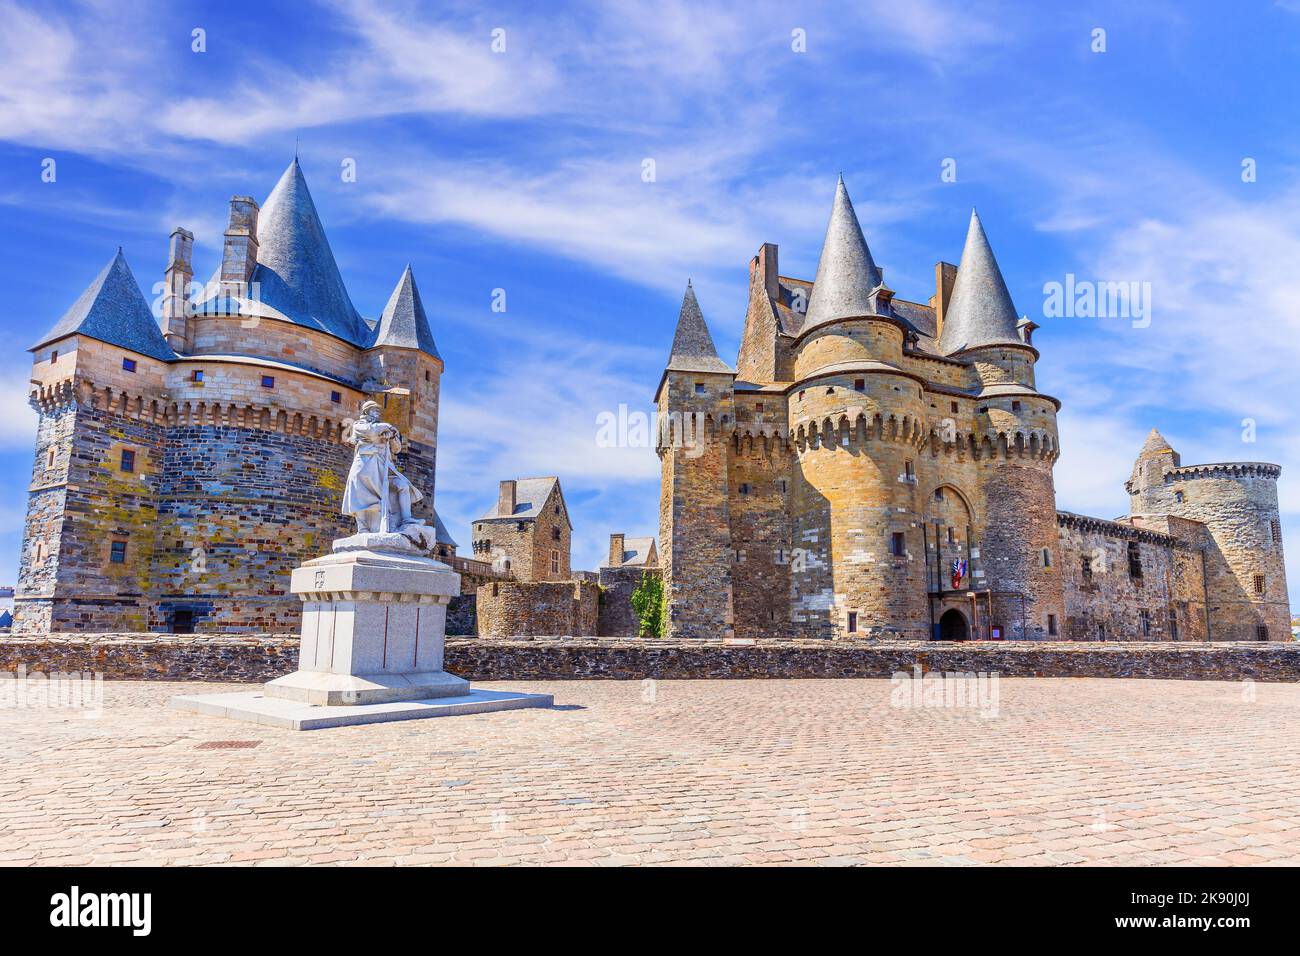 Bretagna, Francia. La città medievale di Vitre con il famoso Chateau de Vitre. Foto Stock